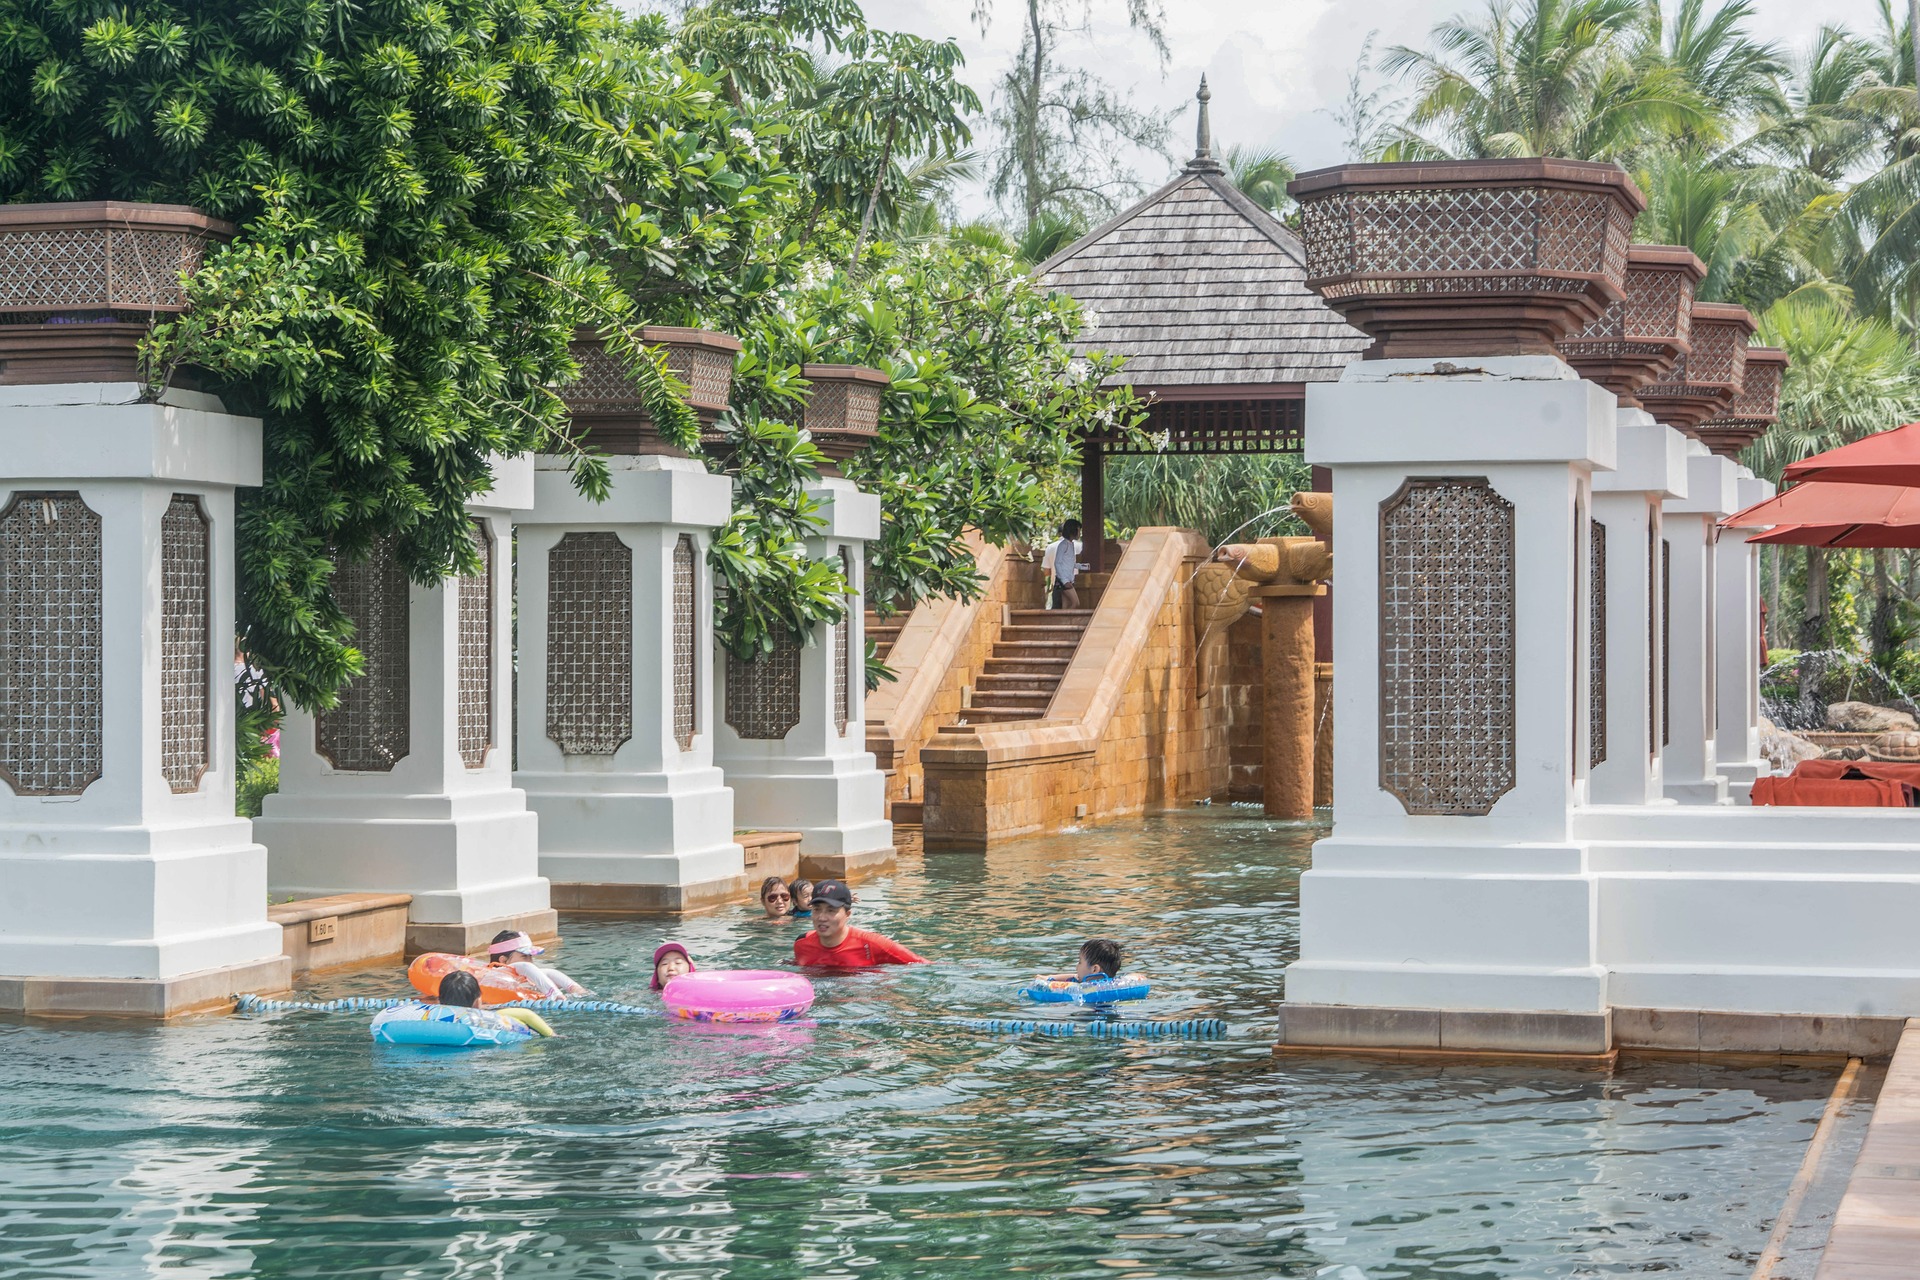 Таиланд может подорожать для иностранных туристов из-за повышения цен в отелях